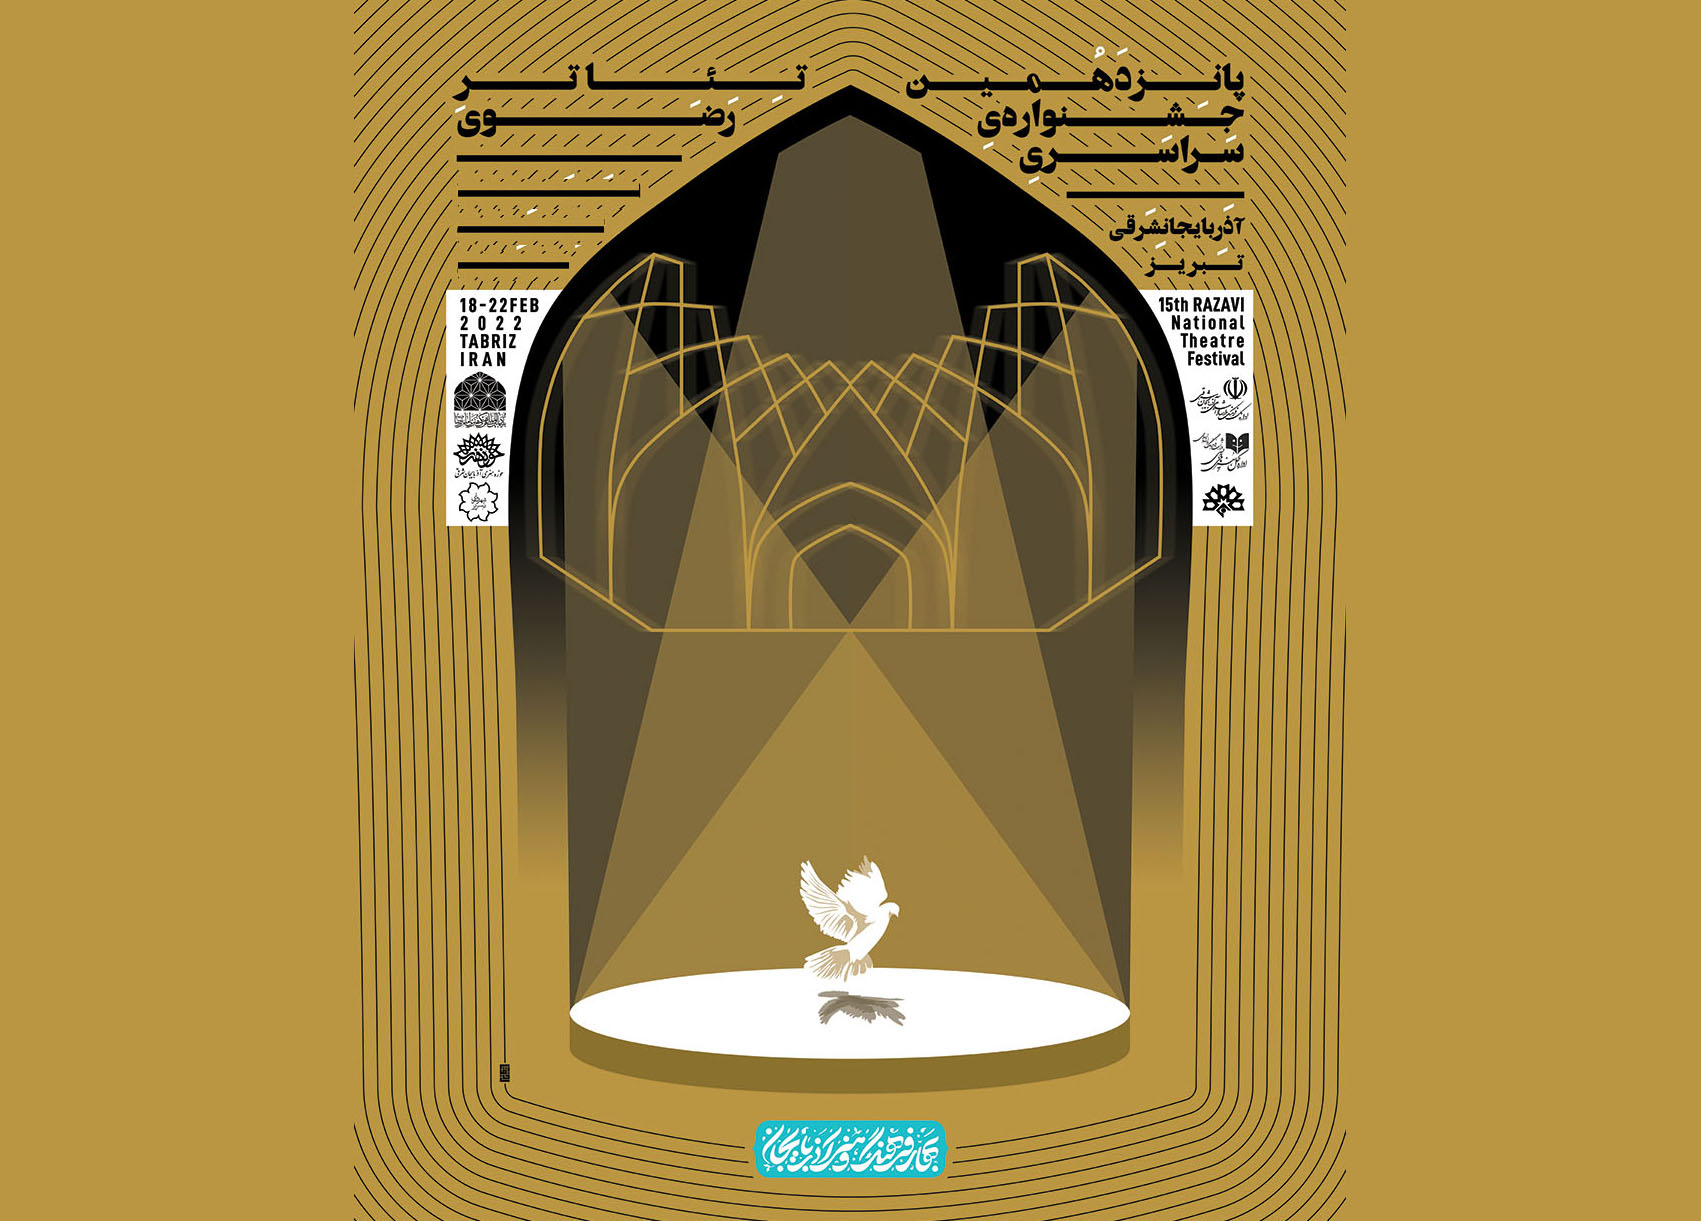 هنرمند اردبیلی برگزیده بخش پوستر پانزدهمین جشنواره تئاتر رضوی | انجمن هنرهای تجسمی استان اردبیل ـ جامعه تخصصی هنرهای تجسمی